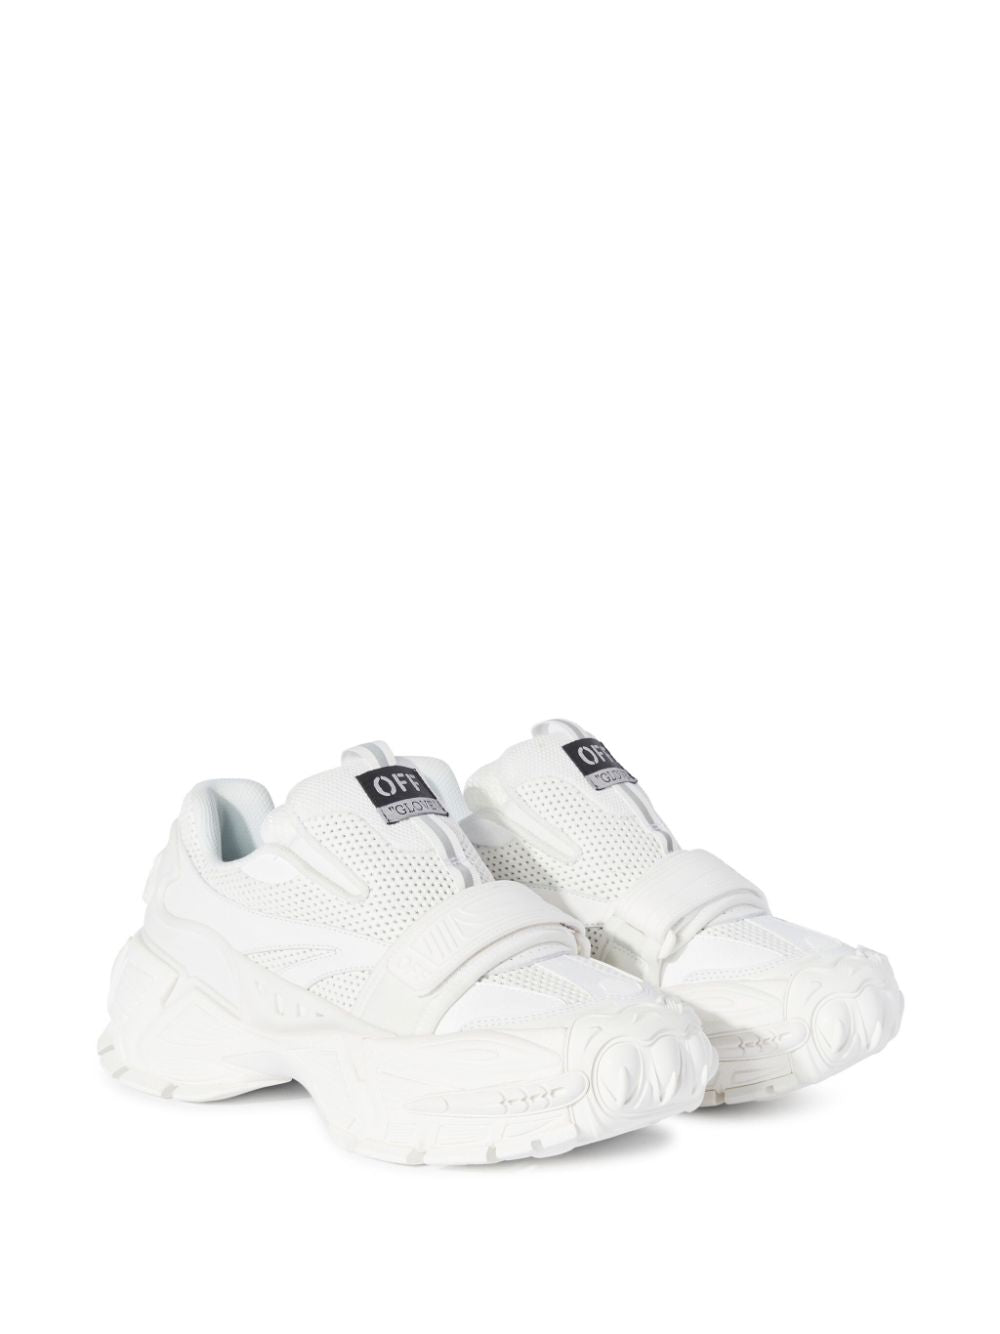 OFF WHITE FASHION Sneakers White